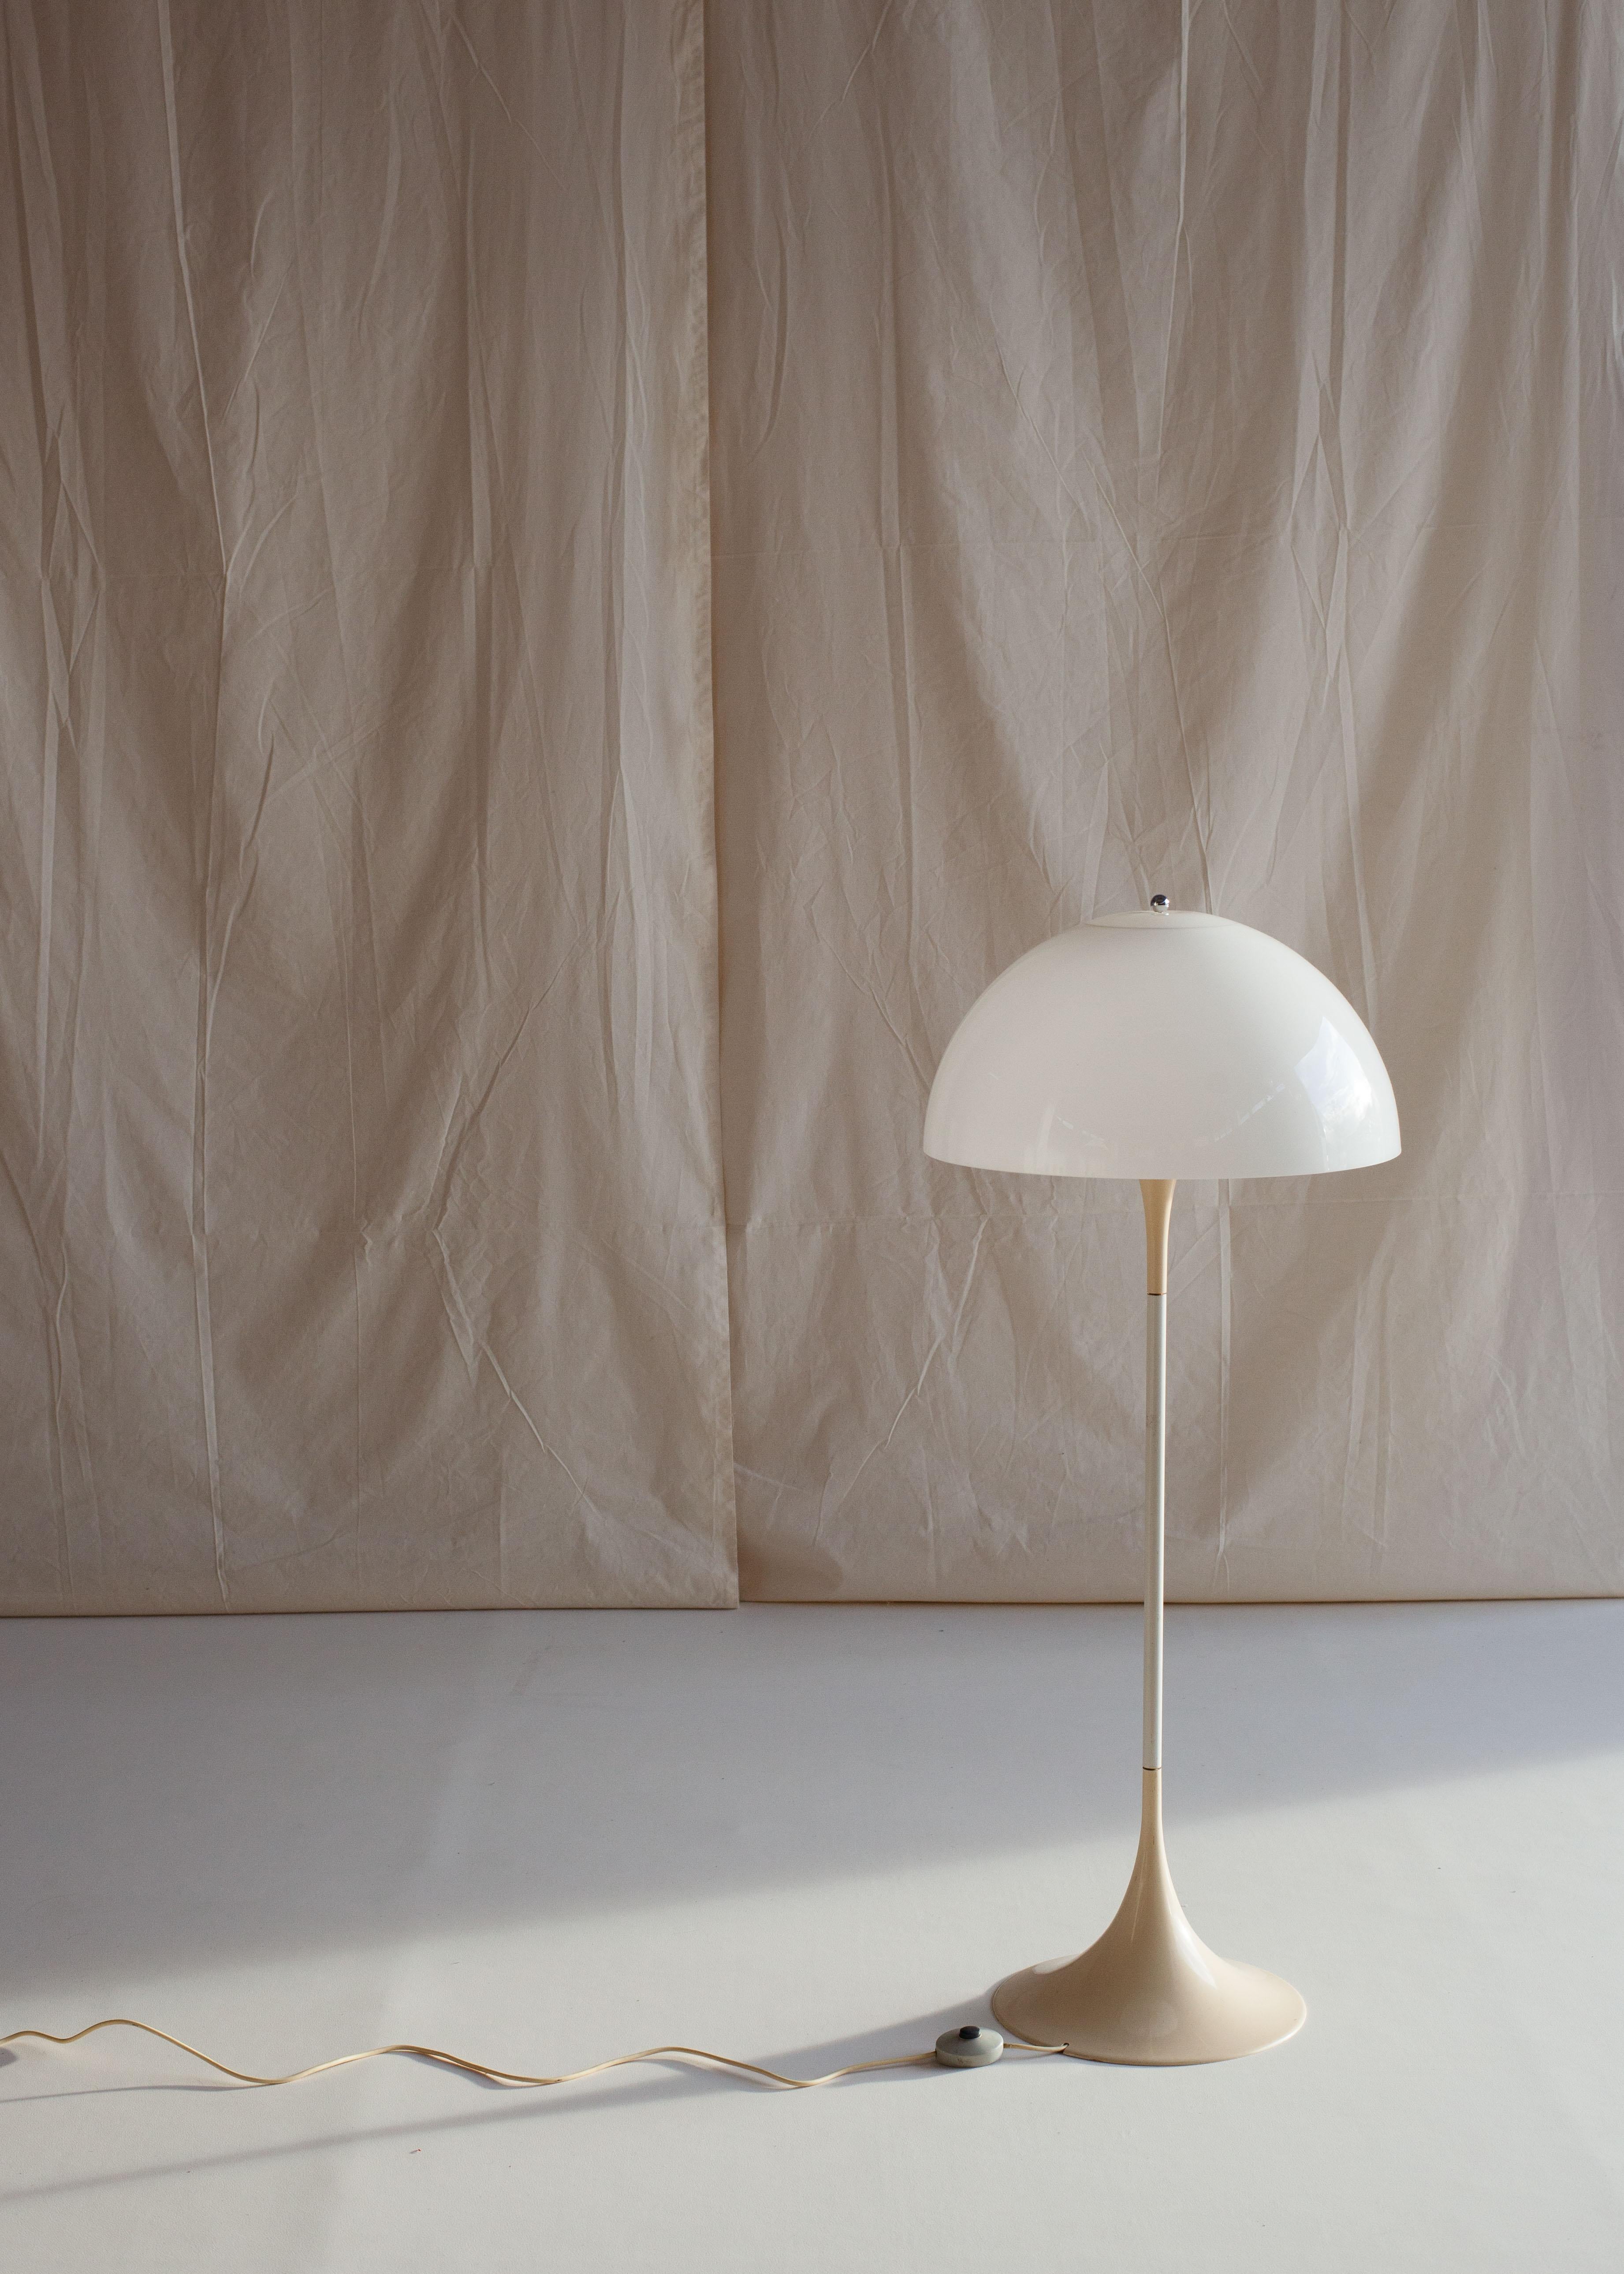 L'emblématique lampe Panthella de Verner Panton pour Louis Poulsen, datant de 1971.

S'inspirant d'Arne Jacobsen, Verner Panton est devenu l'une des principales figures du design danois d'après-guerre. Il est connu pour son utilisation innovante de